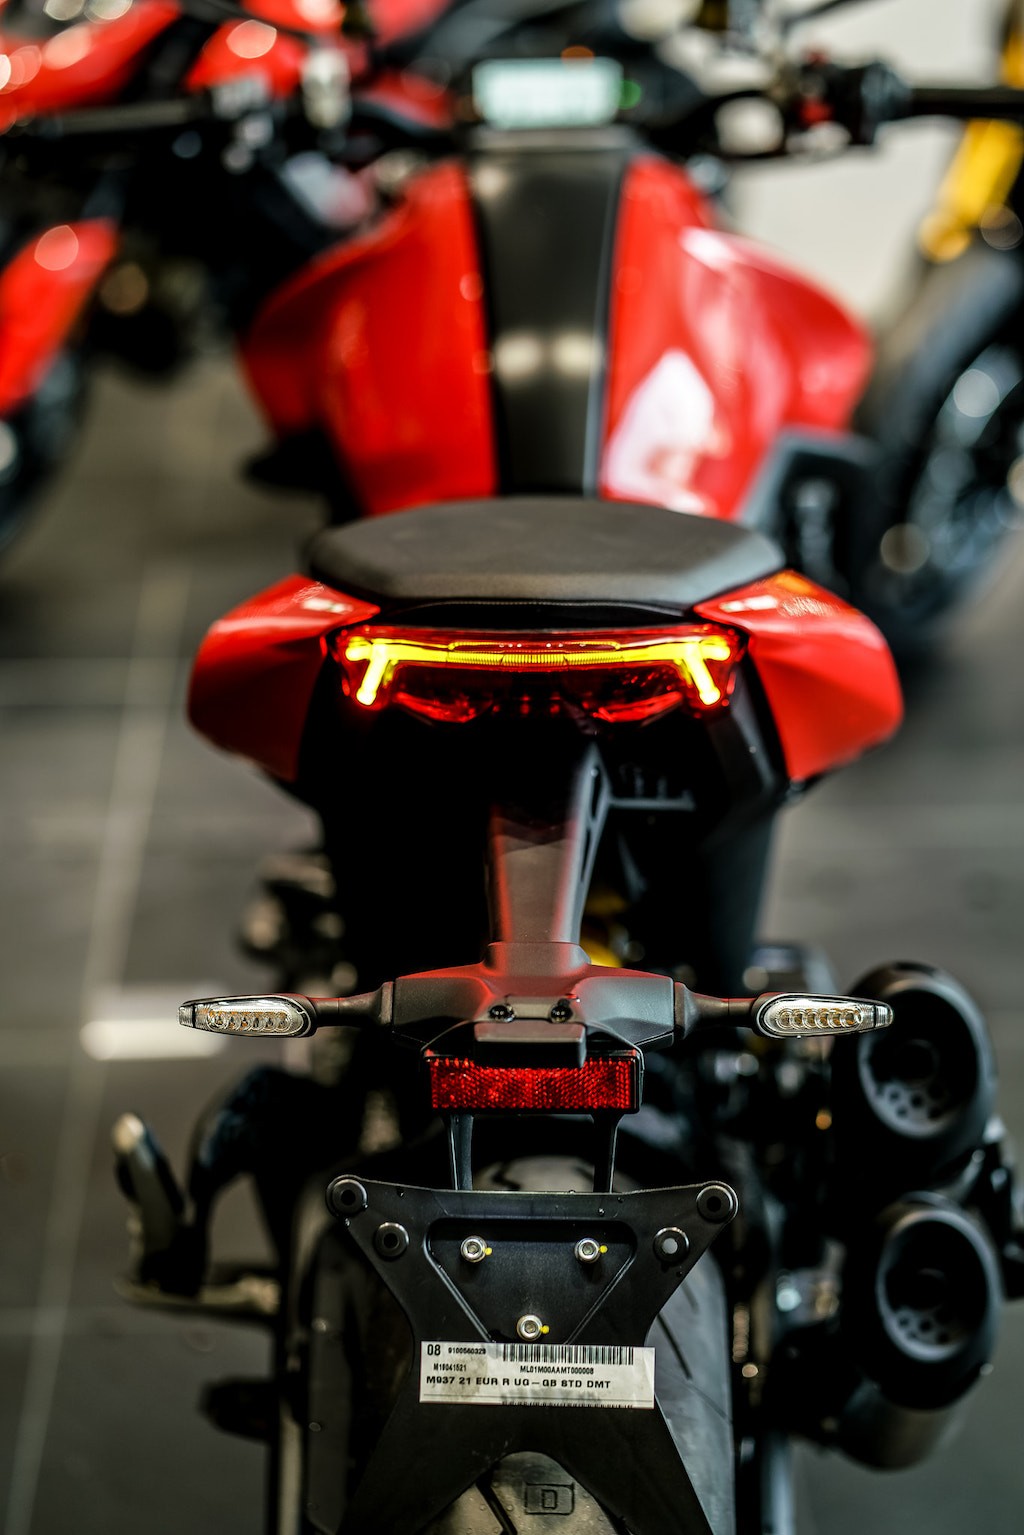 Ducati Monster thế hệ mới “chốt giá” tại Việt Nam, giá “dễ chịu” hơn đời cũ nhưng... ảnh 5